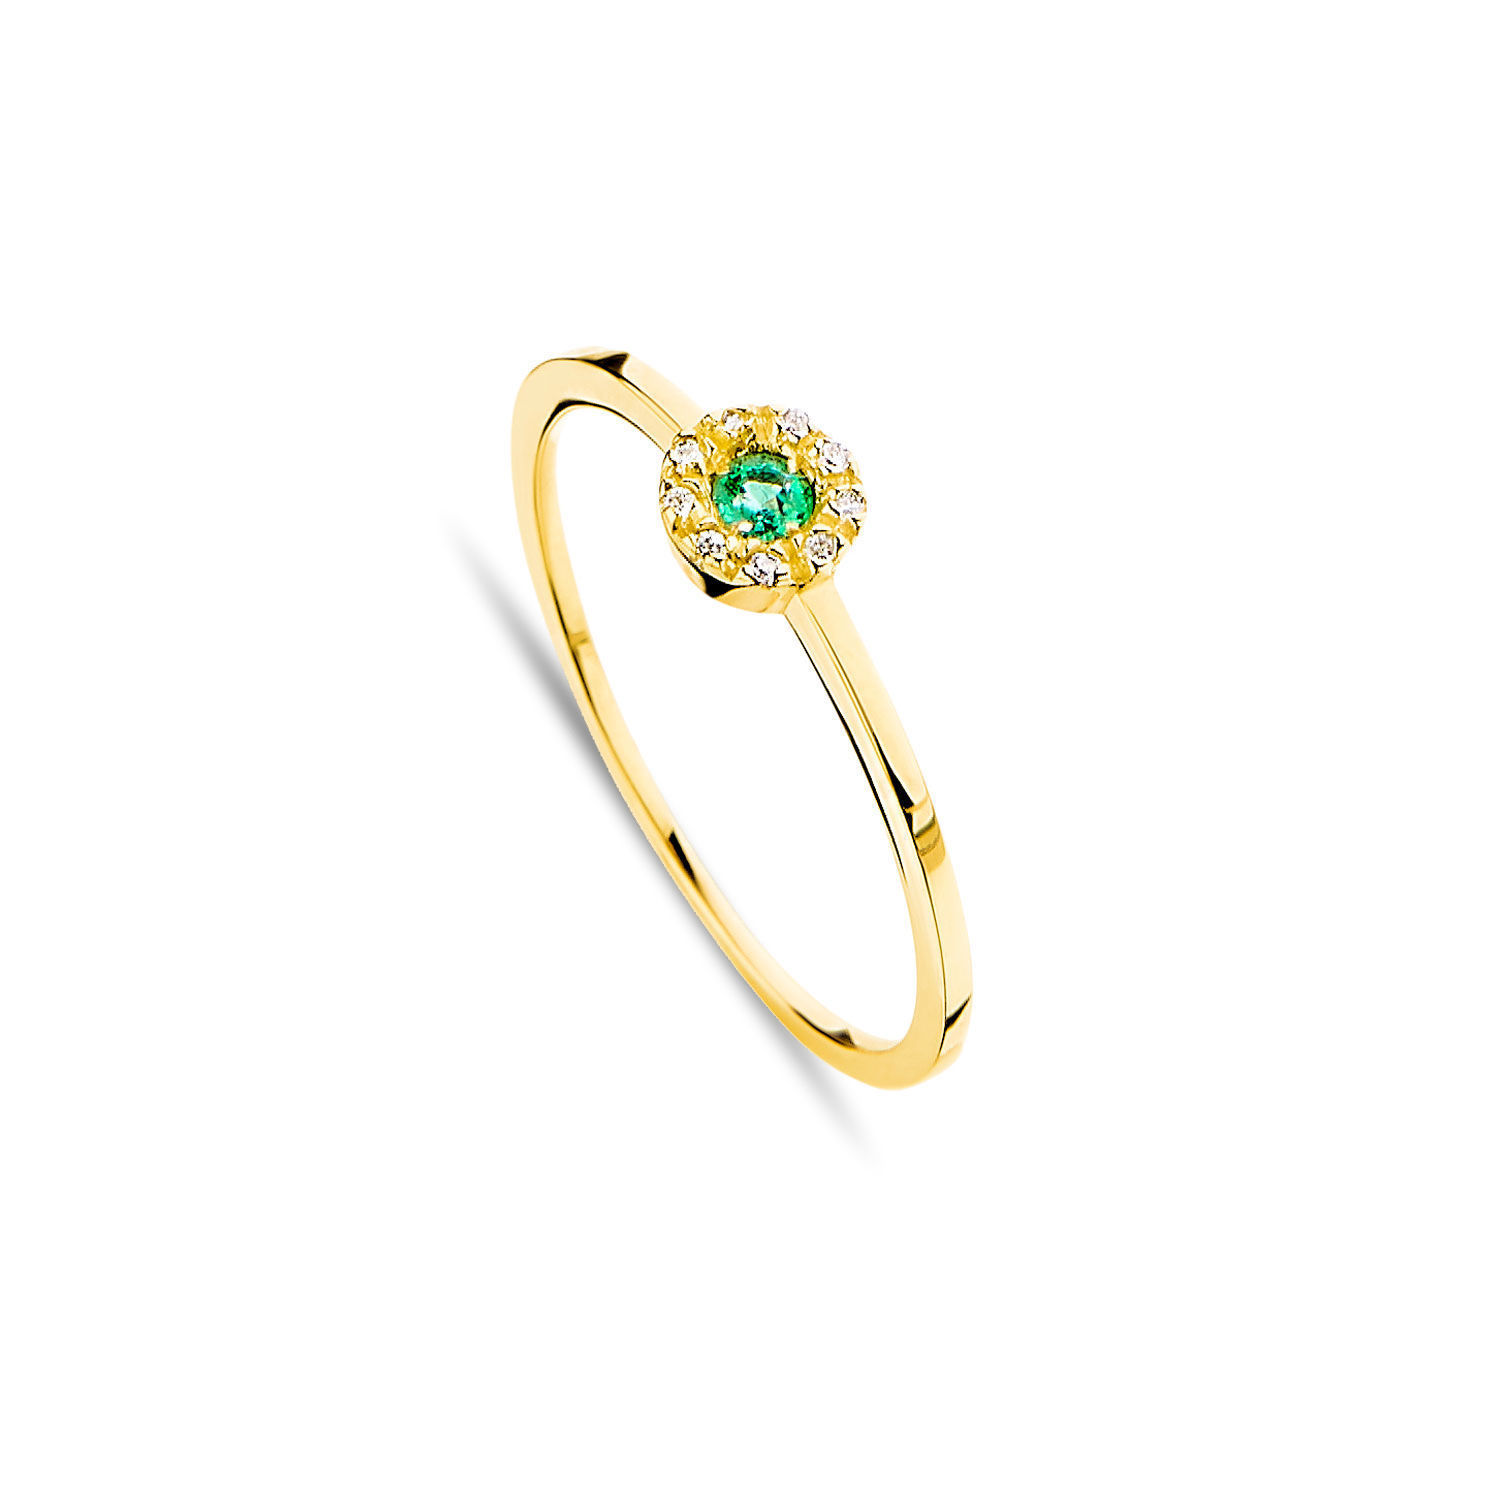 Δαχτυλίδι Gems από χρυσό 18K με σμαράγδι και διαμάντια μπριγιάν